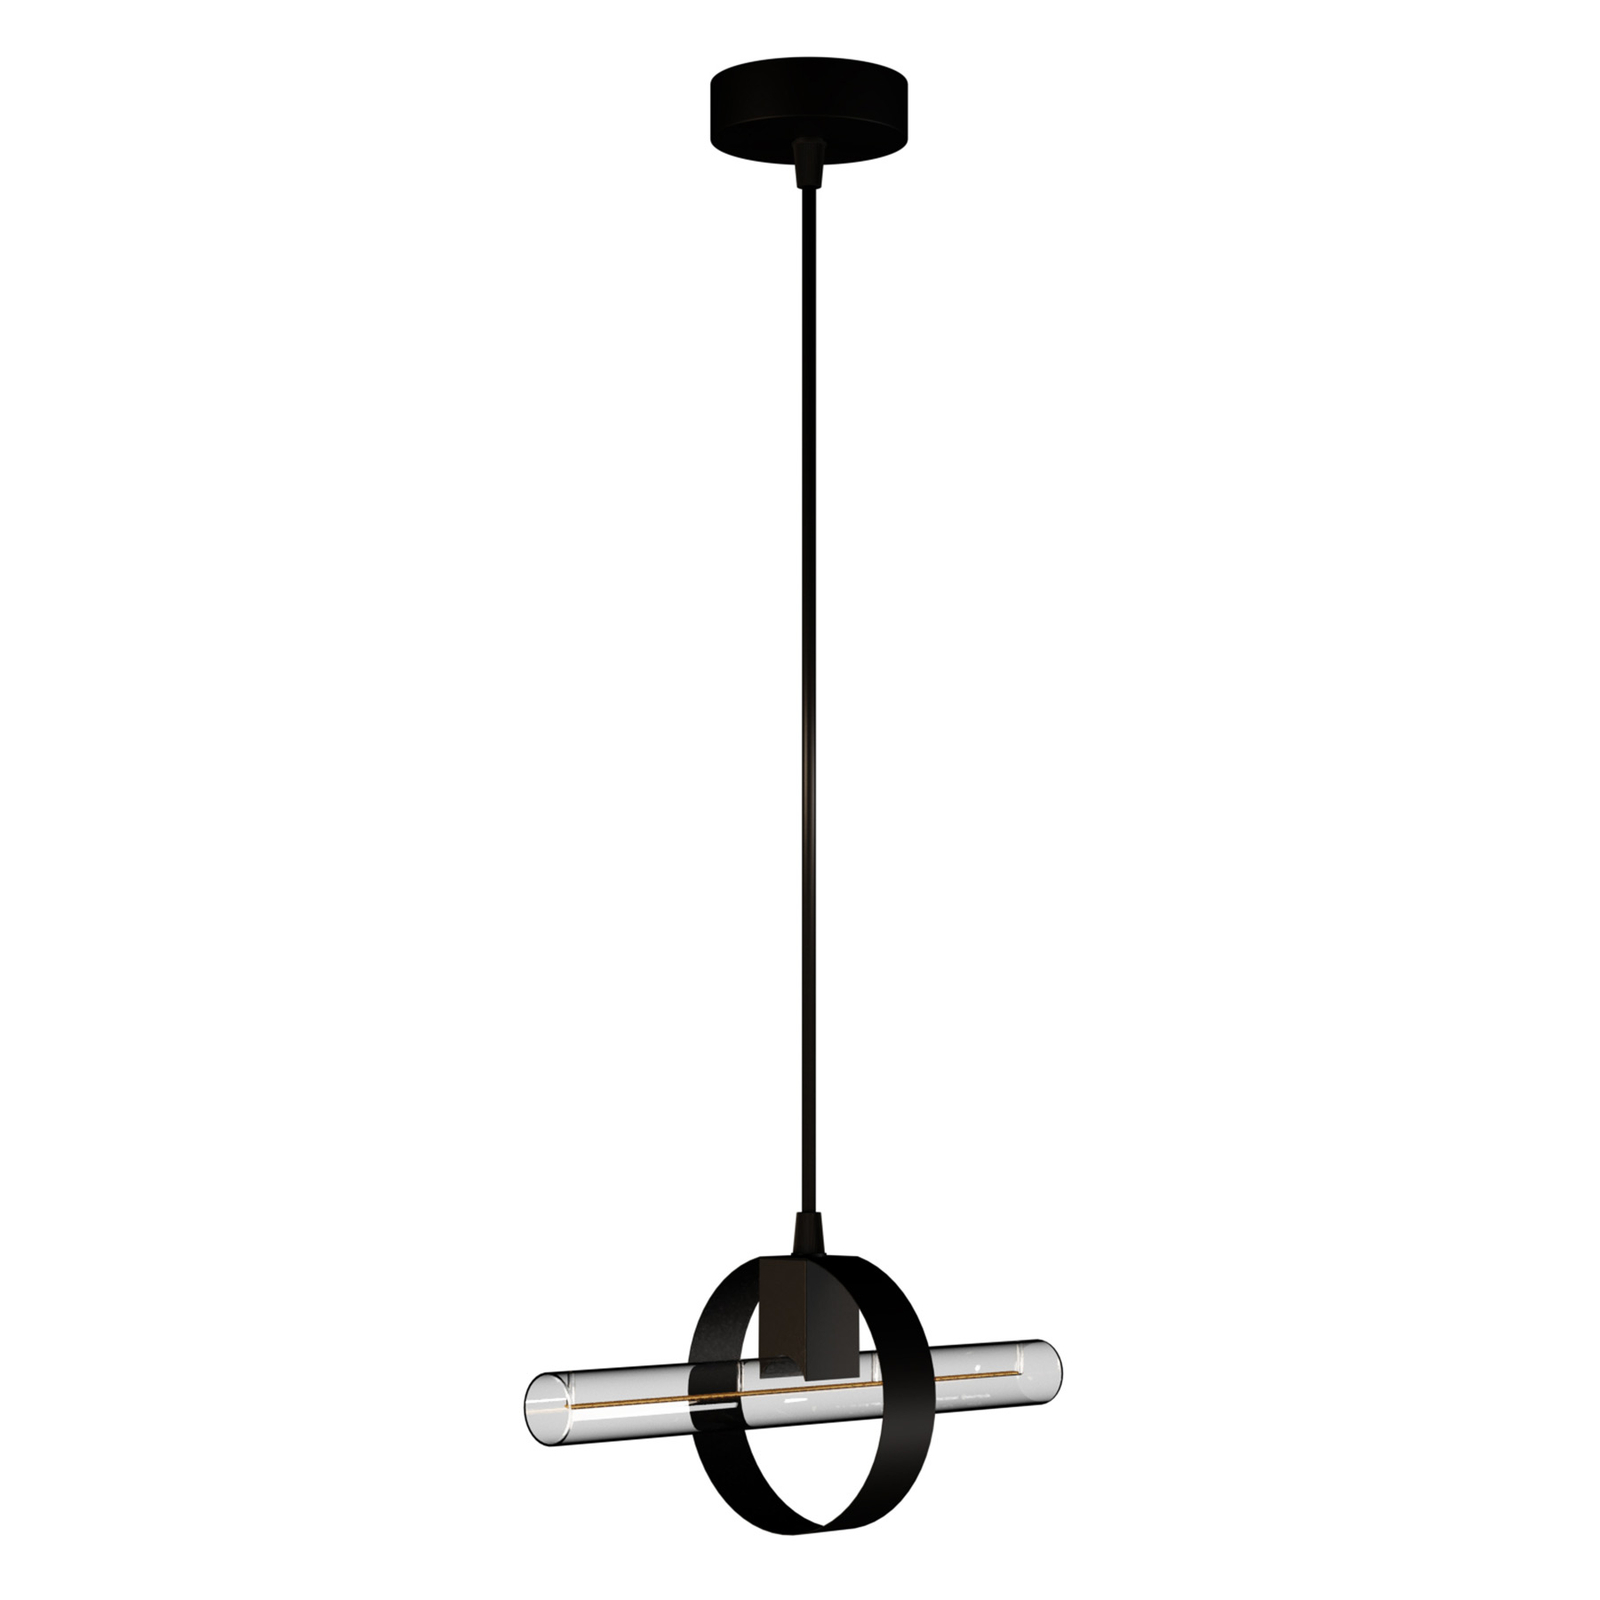 SEGULA Level hængelampe i moderne design